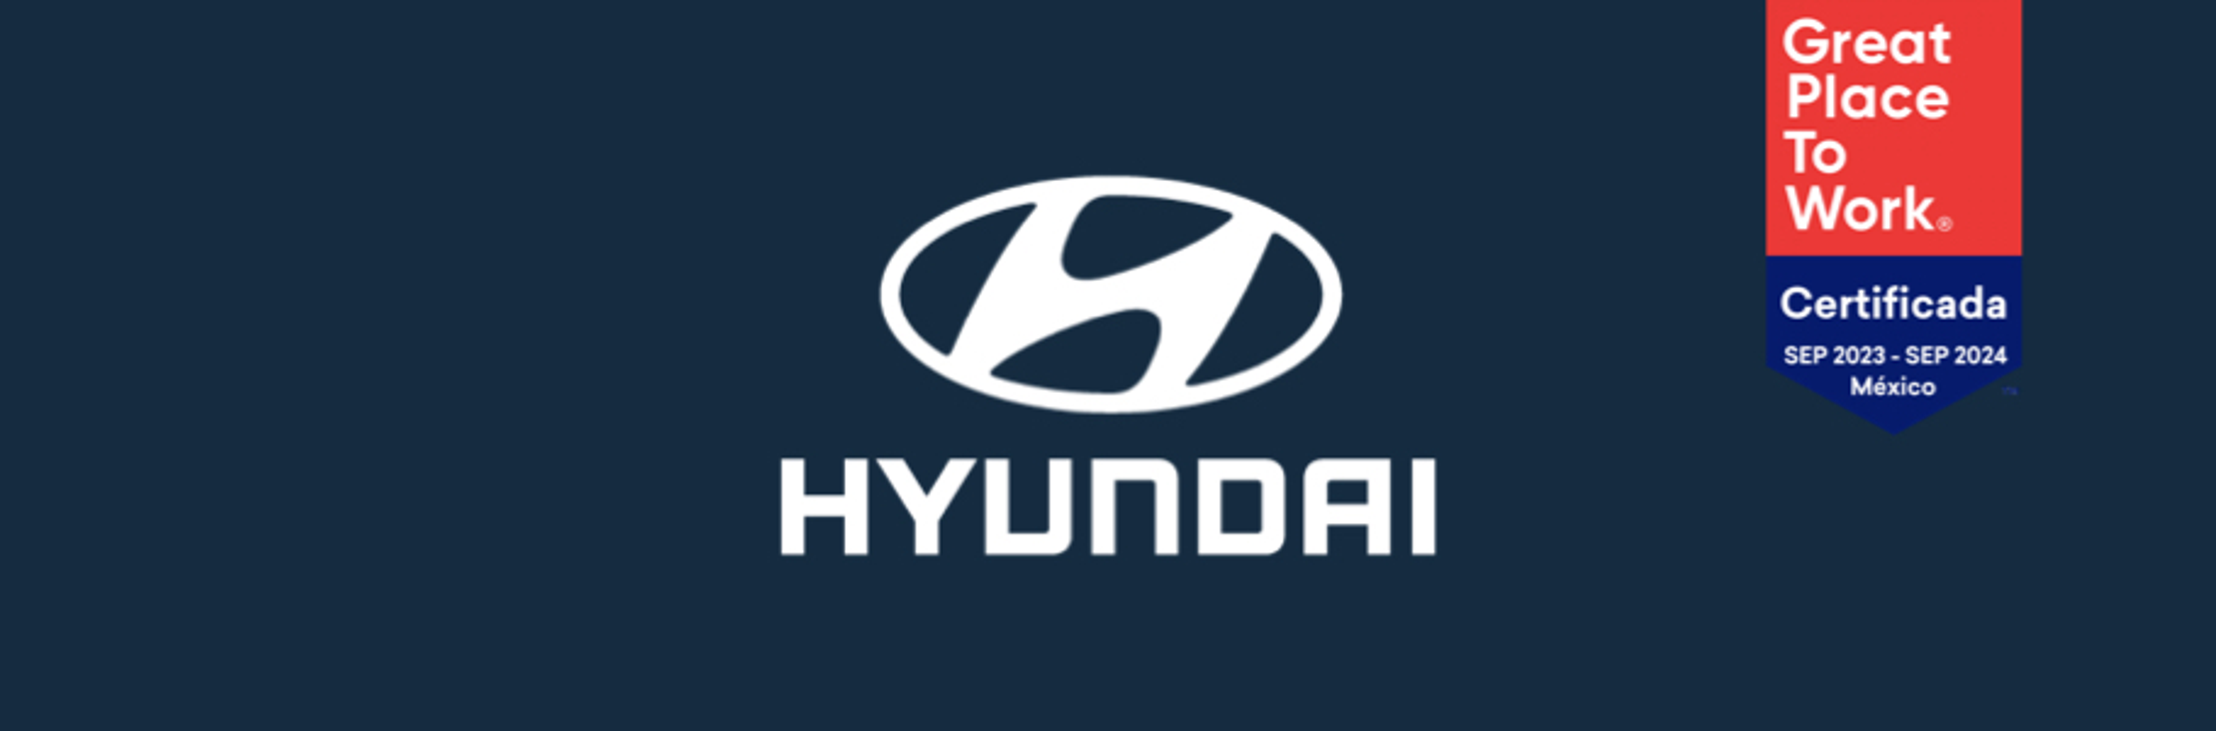 Hyundai Motor de México es reconocido como un Great Place to Work